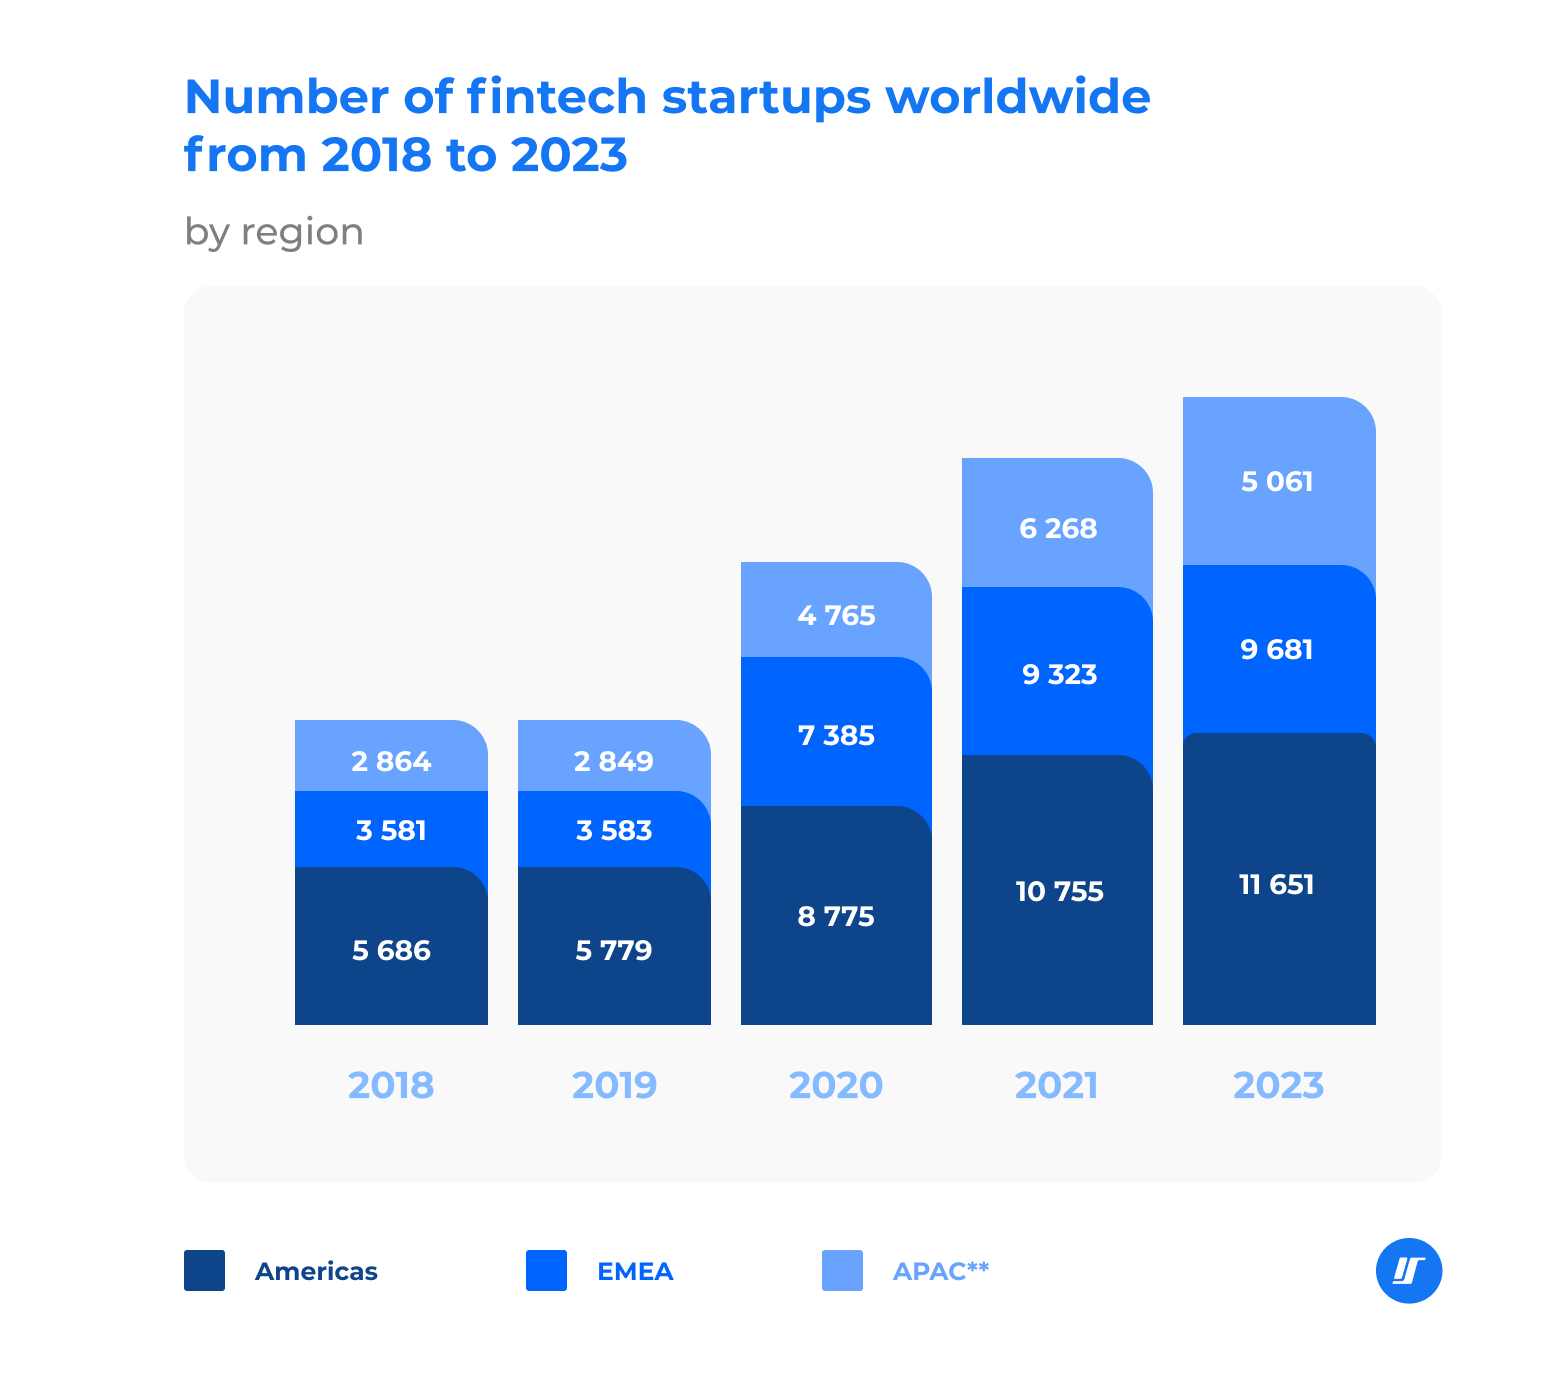 Number of fintech startups worldwide chart, 2018-2023